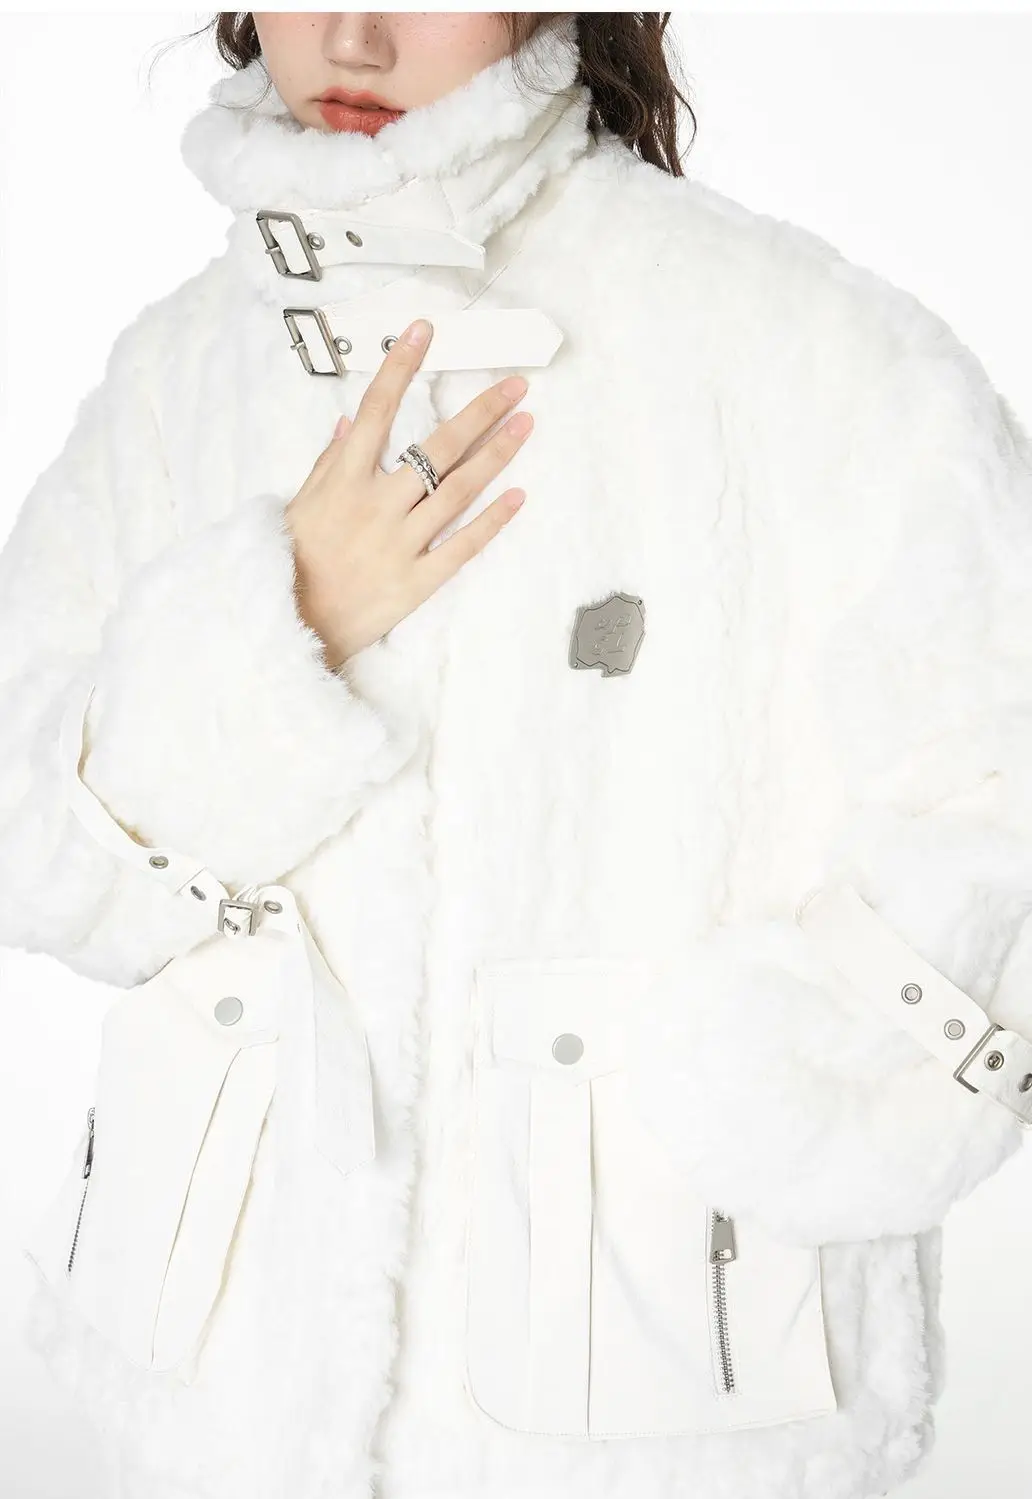 양털 겨울 플러시 겉옷, 두껍고 따뜻한 패션 다운 재킷, 단색 코트, 지퍼 모리 걸 패션 스트리트웨어